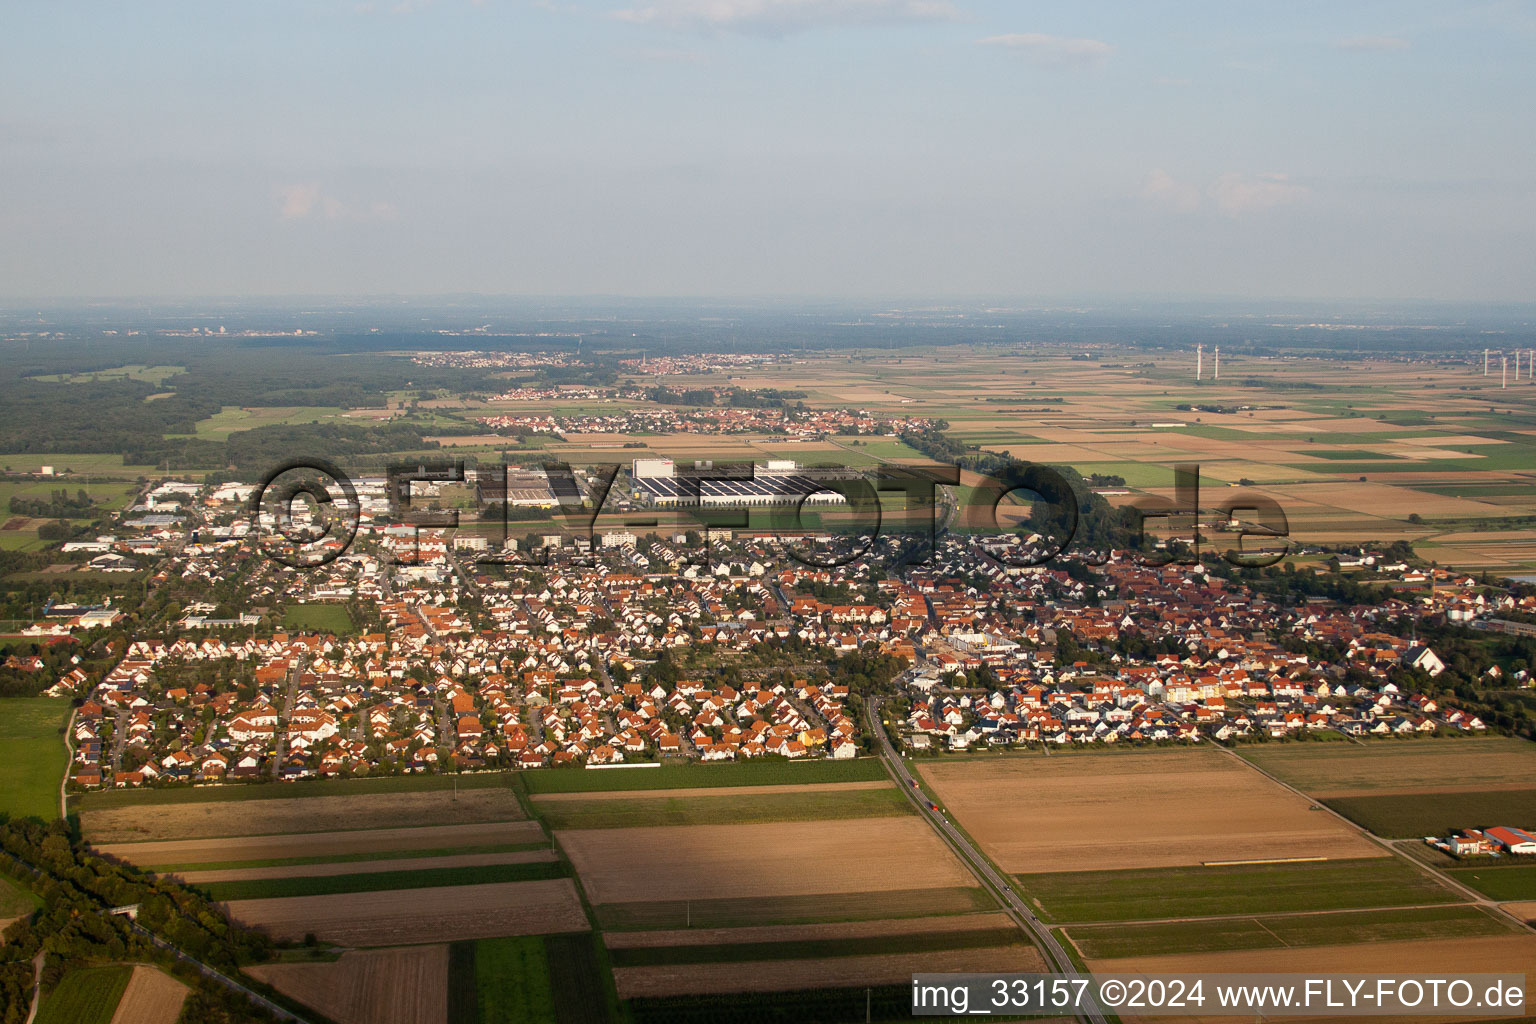 Vue aérienne de De l'ouest à Offenbach an der Queich dans le département Rhénanie-Palatinat, Allemagne